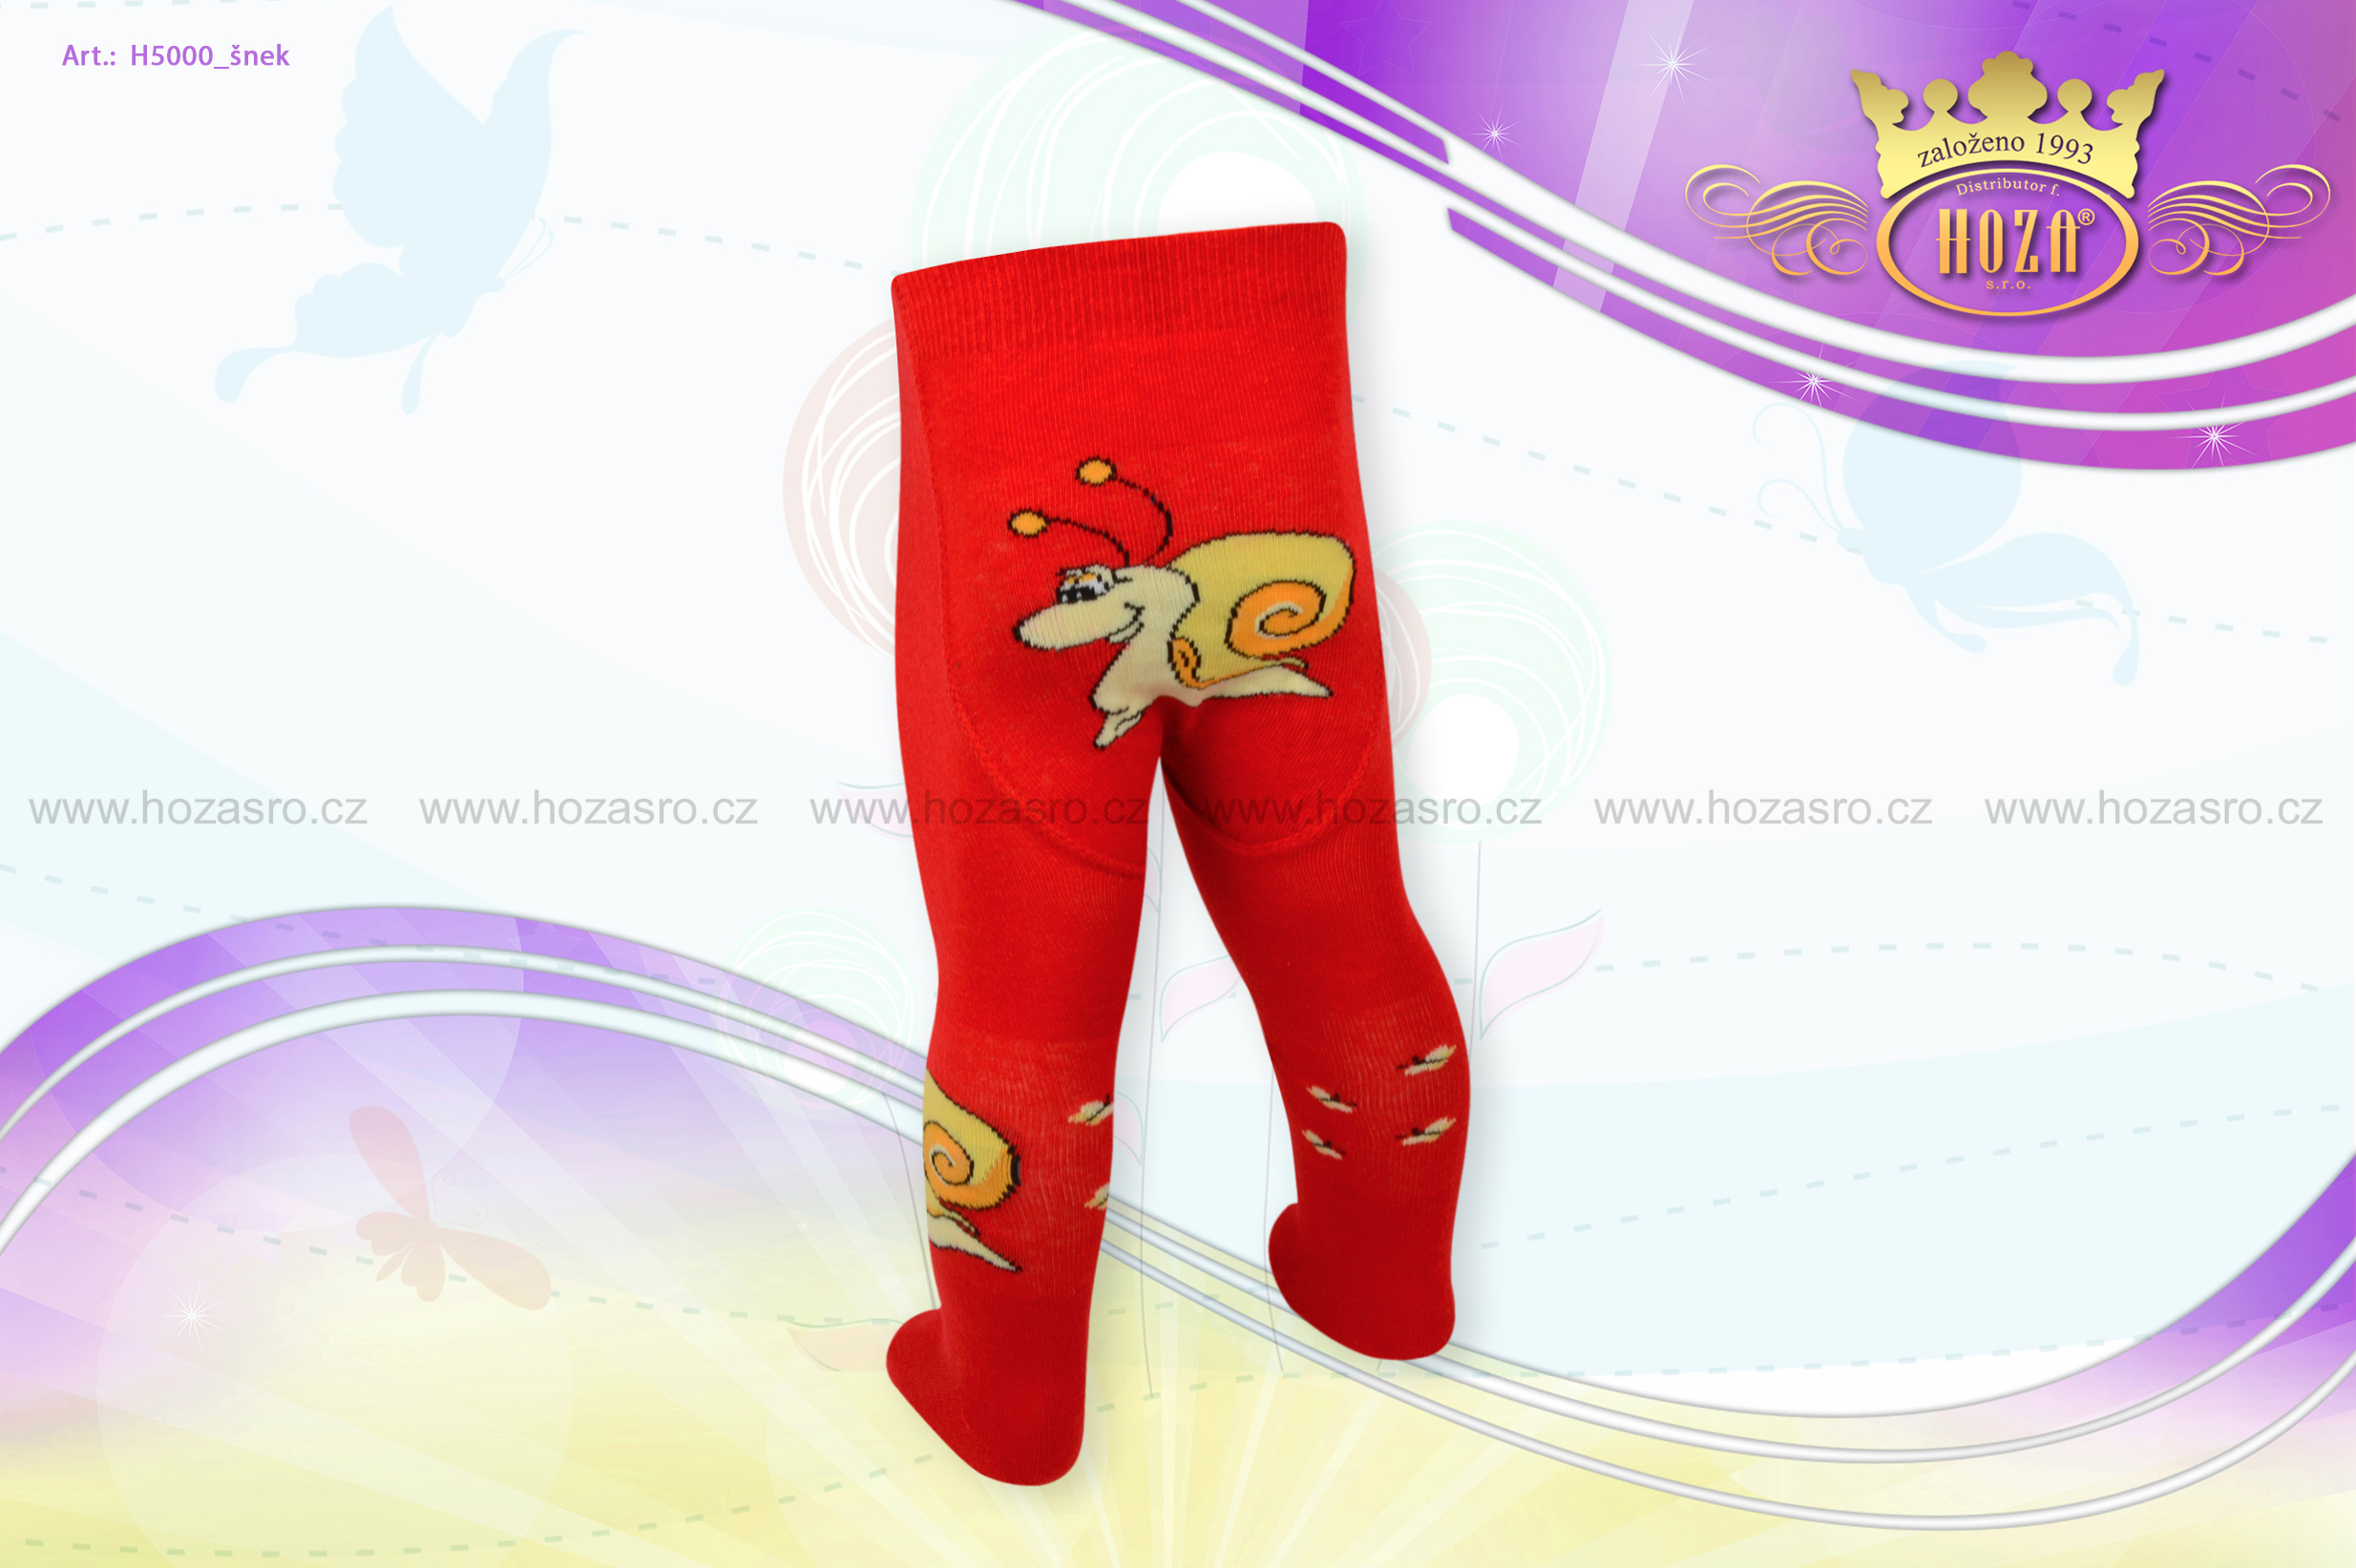 Dětské punčochové kalhoty - šnek - H5000-n7